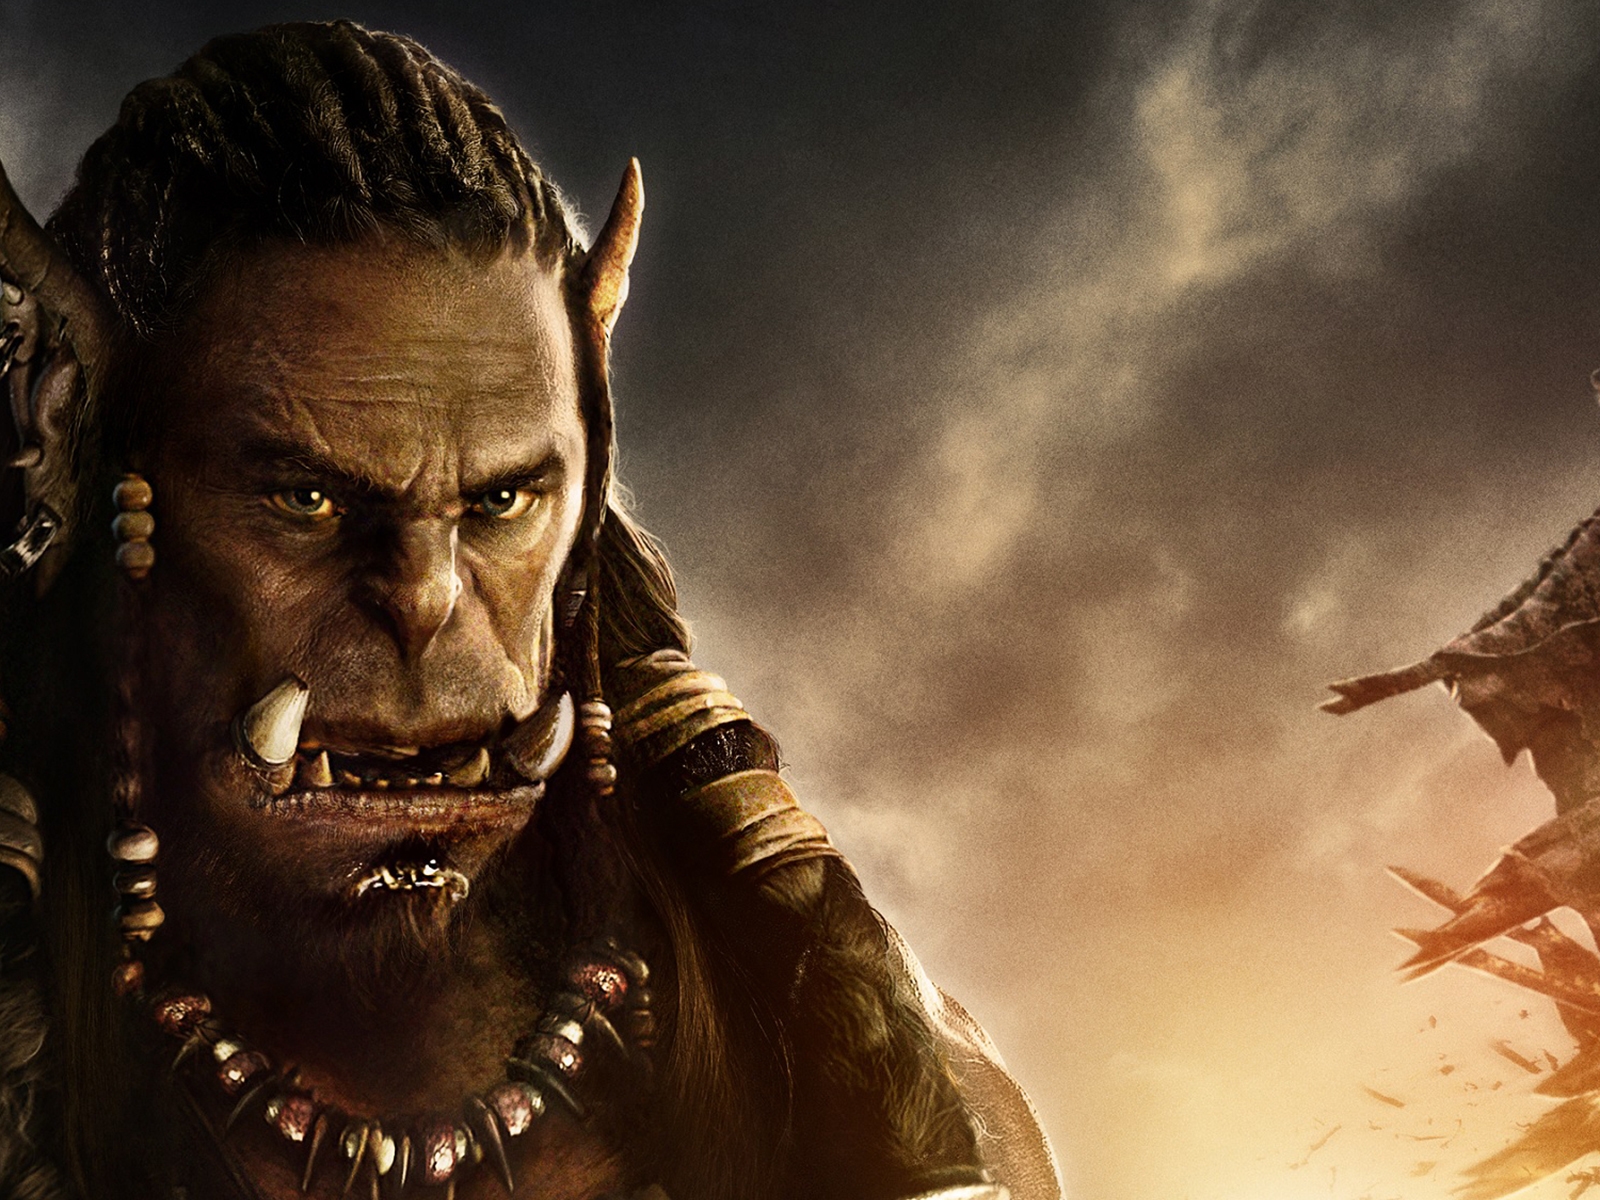 Warcraft Movie 2016 Durotan for 1600 x 1200 resolution